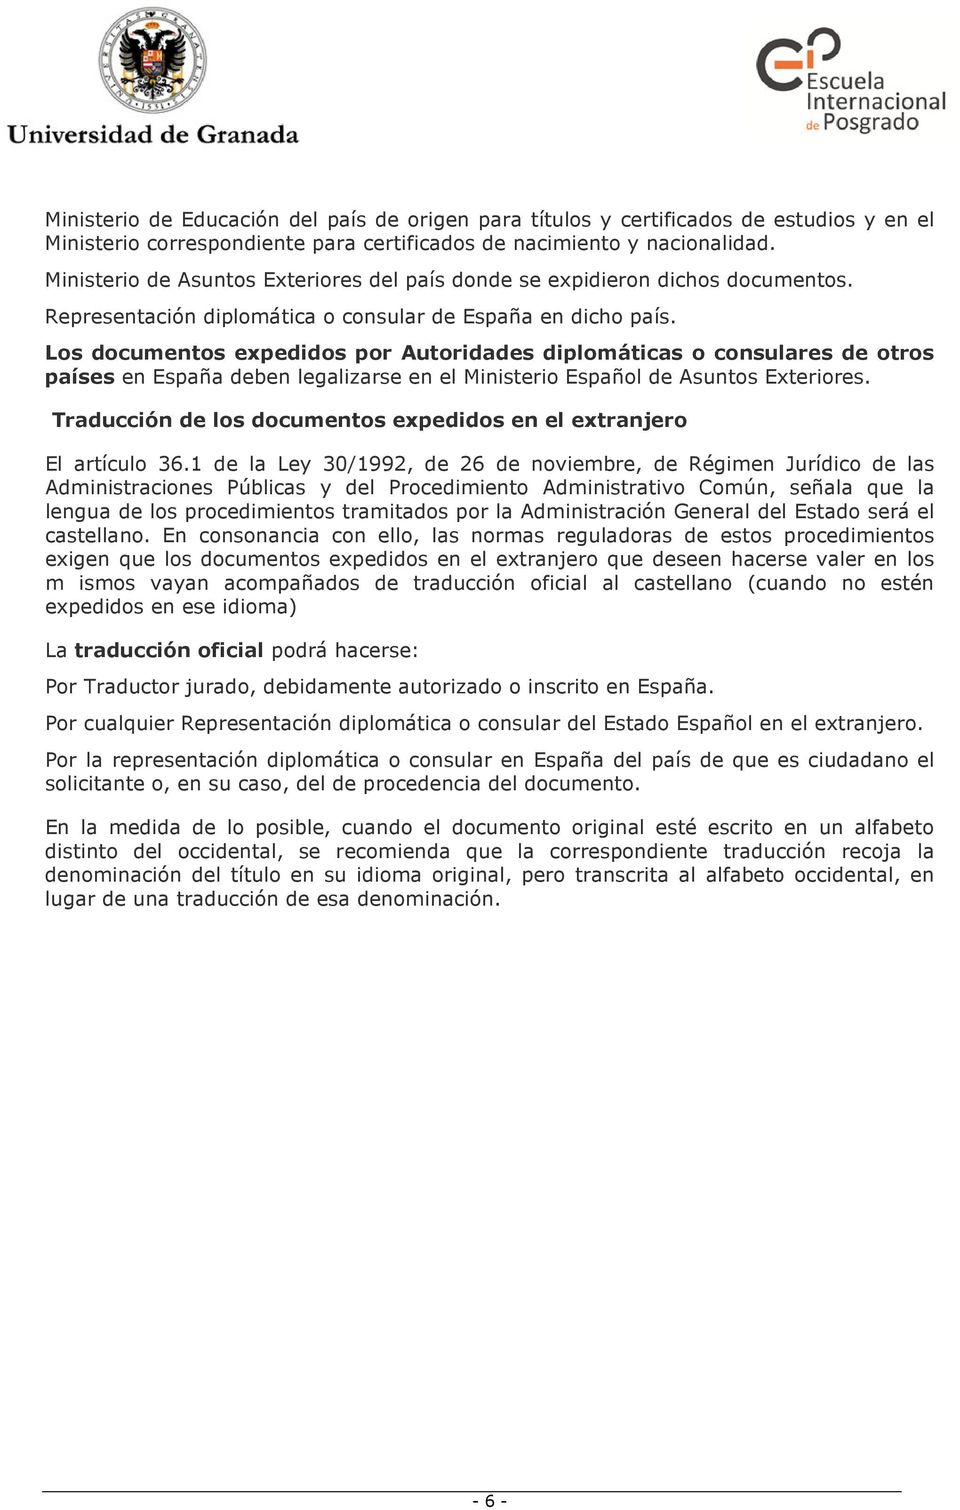 Los documentos expedidos por Autoridades diplomáticas o consulares de otros países en España deben legalizarse en el Ministerio Español de Asuntos Exteriores.